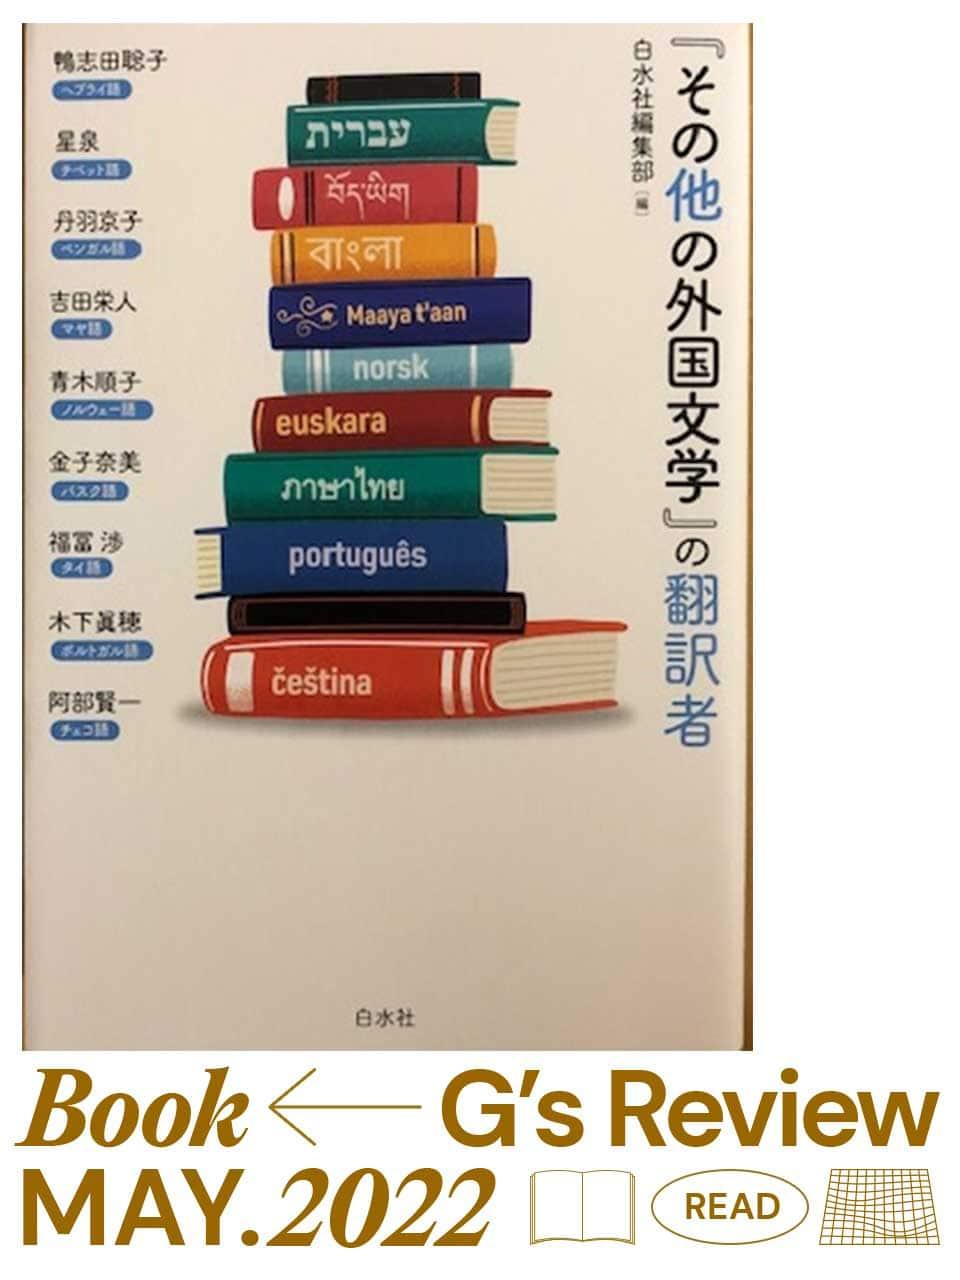 翻訳者9人が、言葉との出合いと紆余曲折の道のりを語る『「その他の外国文学」の翻訳者』｜G’s BOOK REVIEW